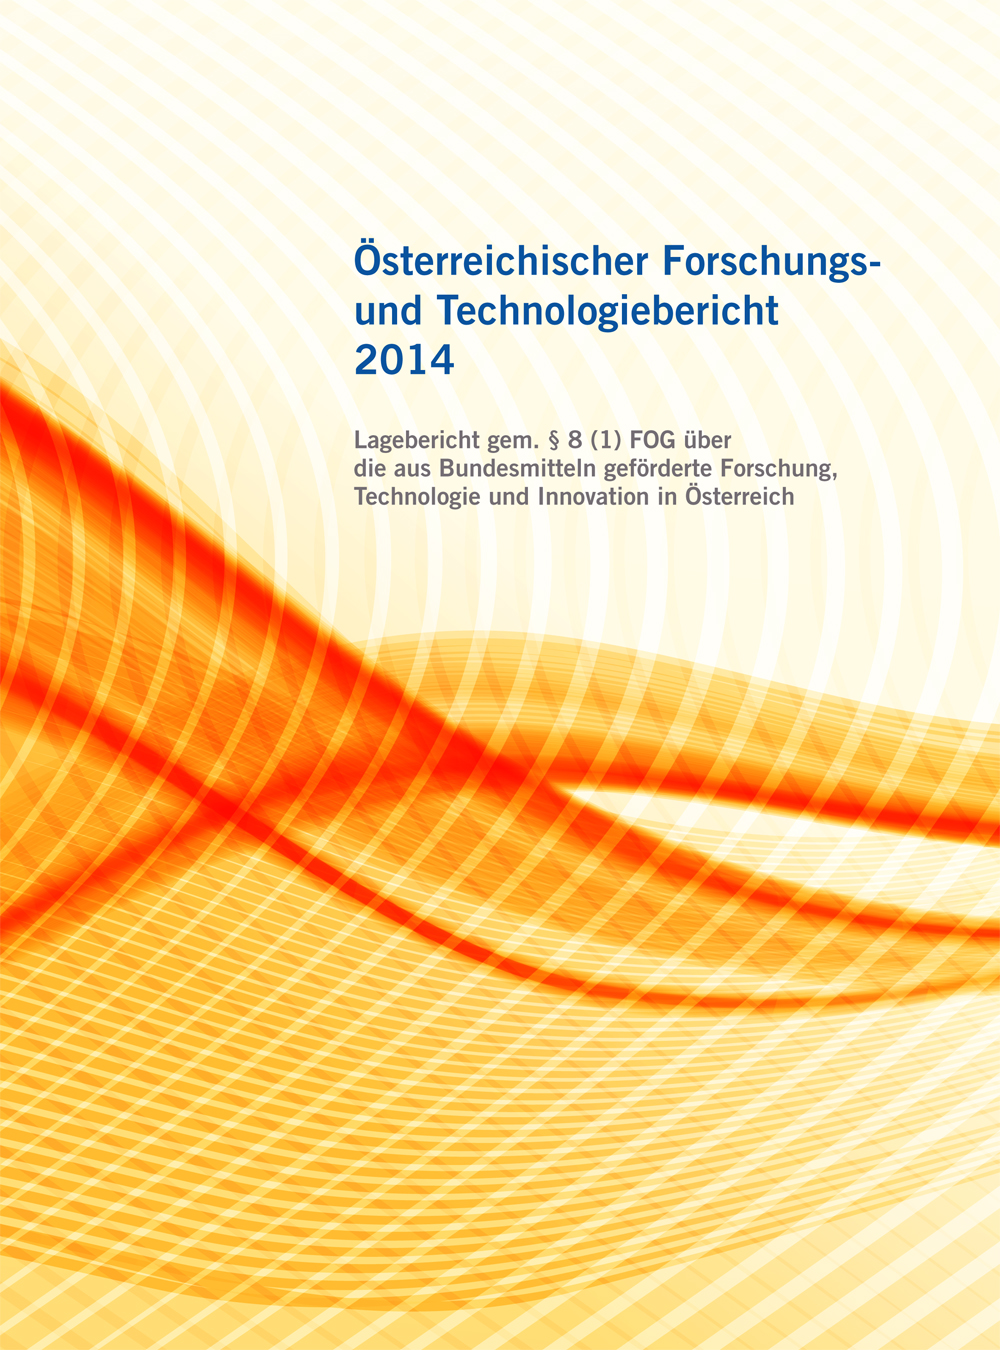 Titelbild der Publikation "Österreichischer Forschungs- undTechnologiebericht 2014"